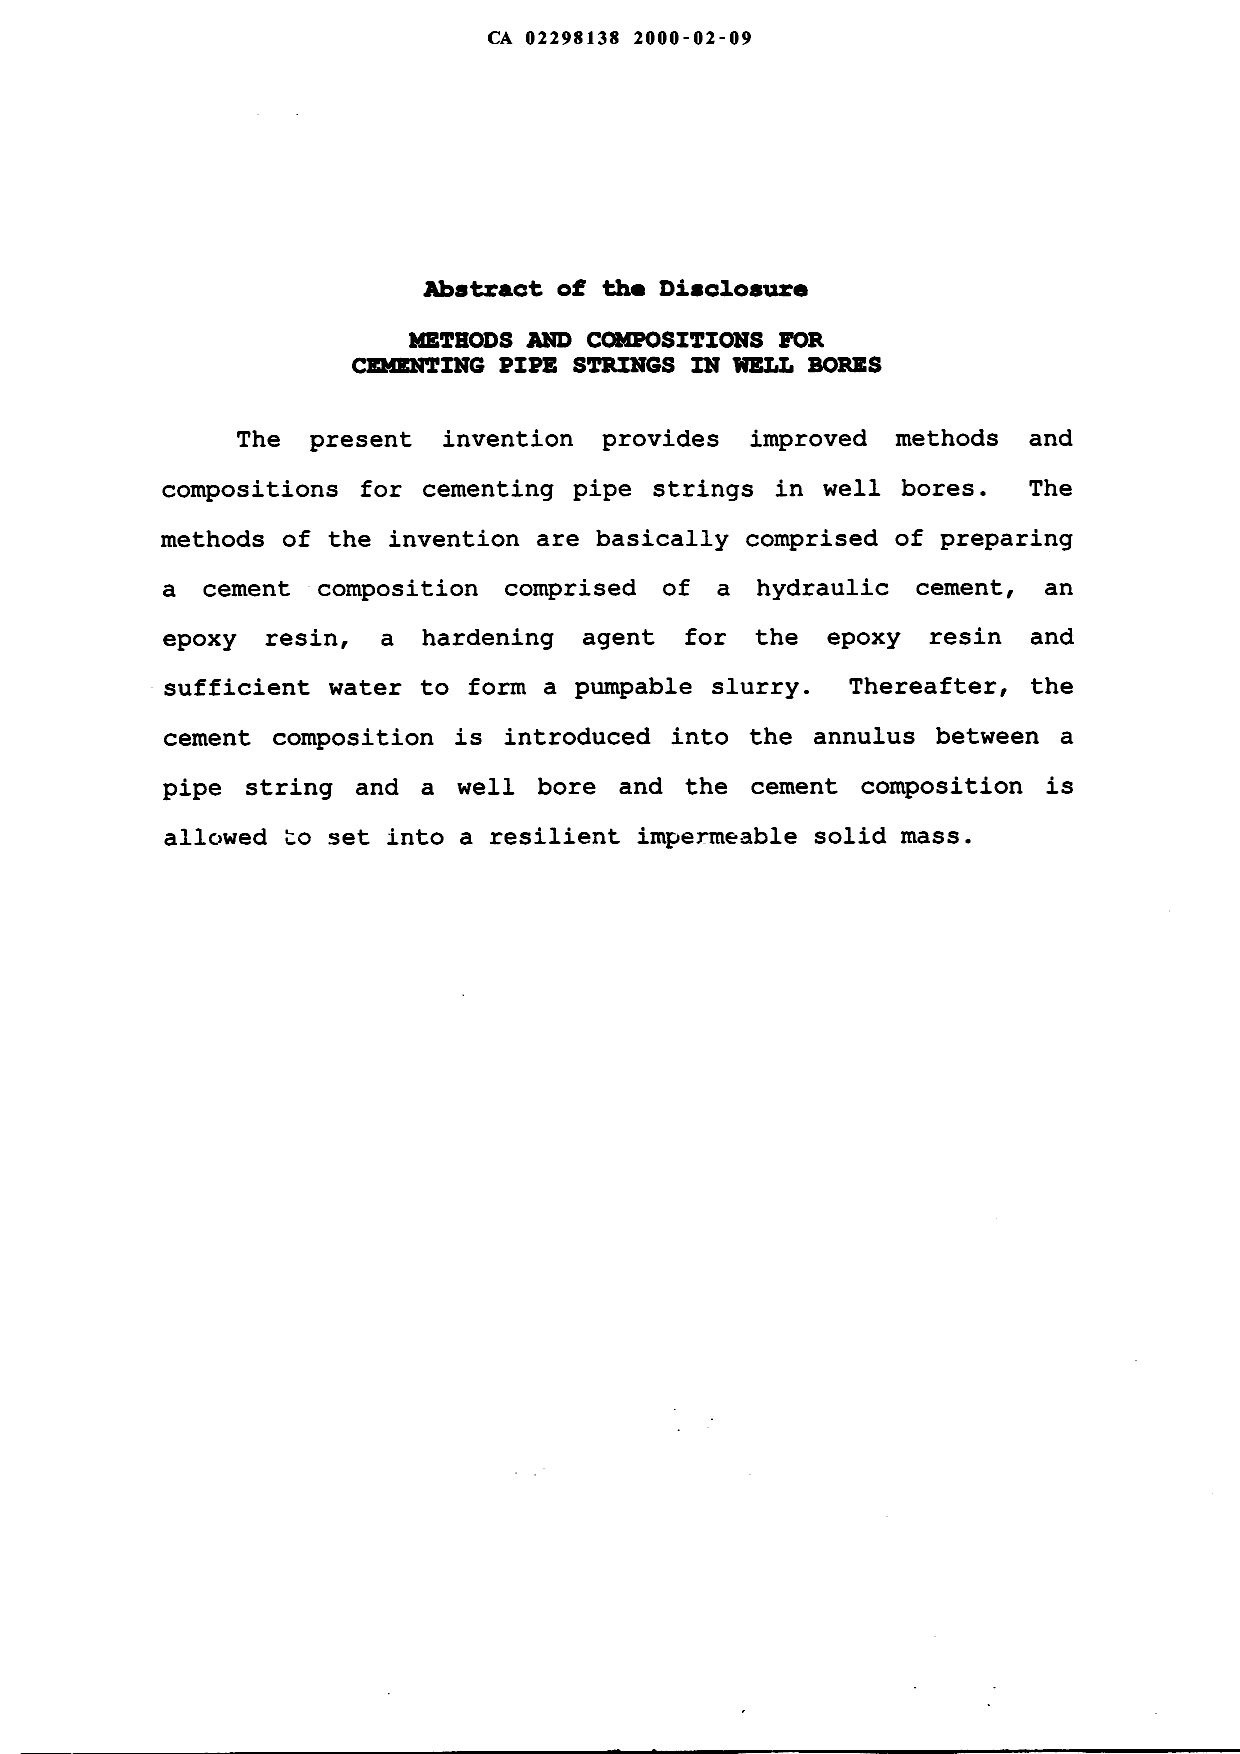 Document de brevet canadien 2298138. Abrégé 20000209. Image 1 de 1